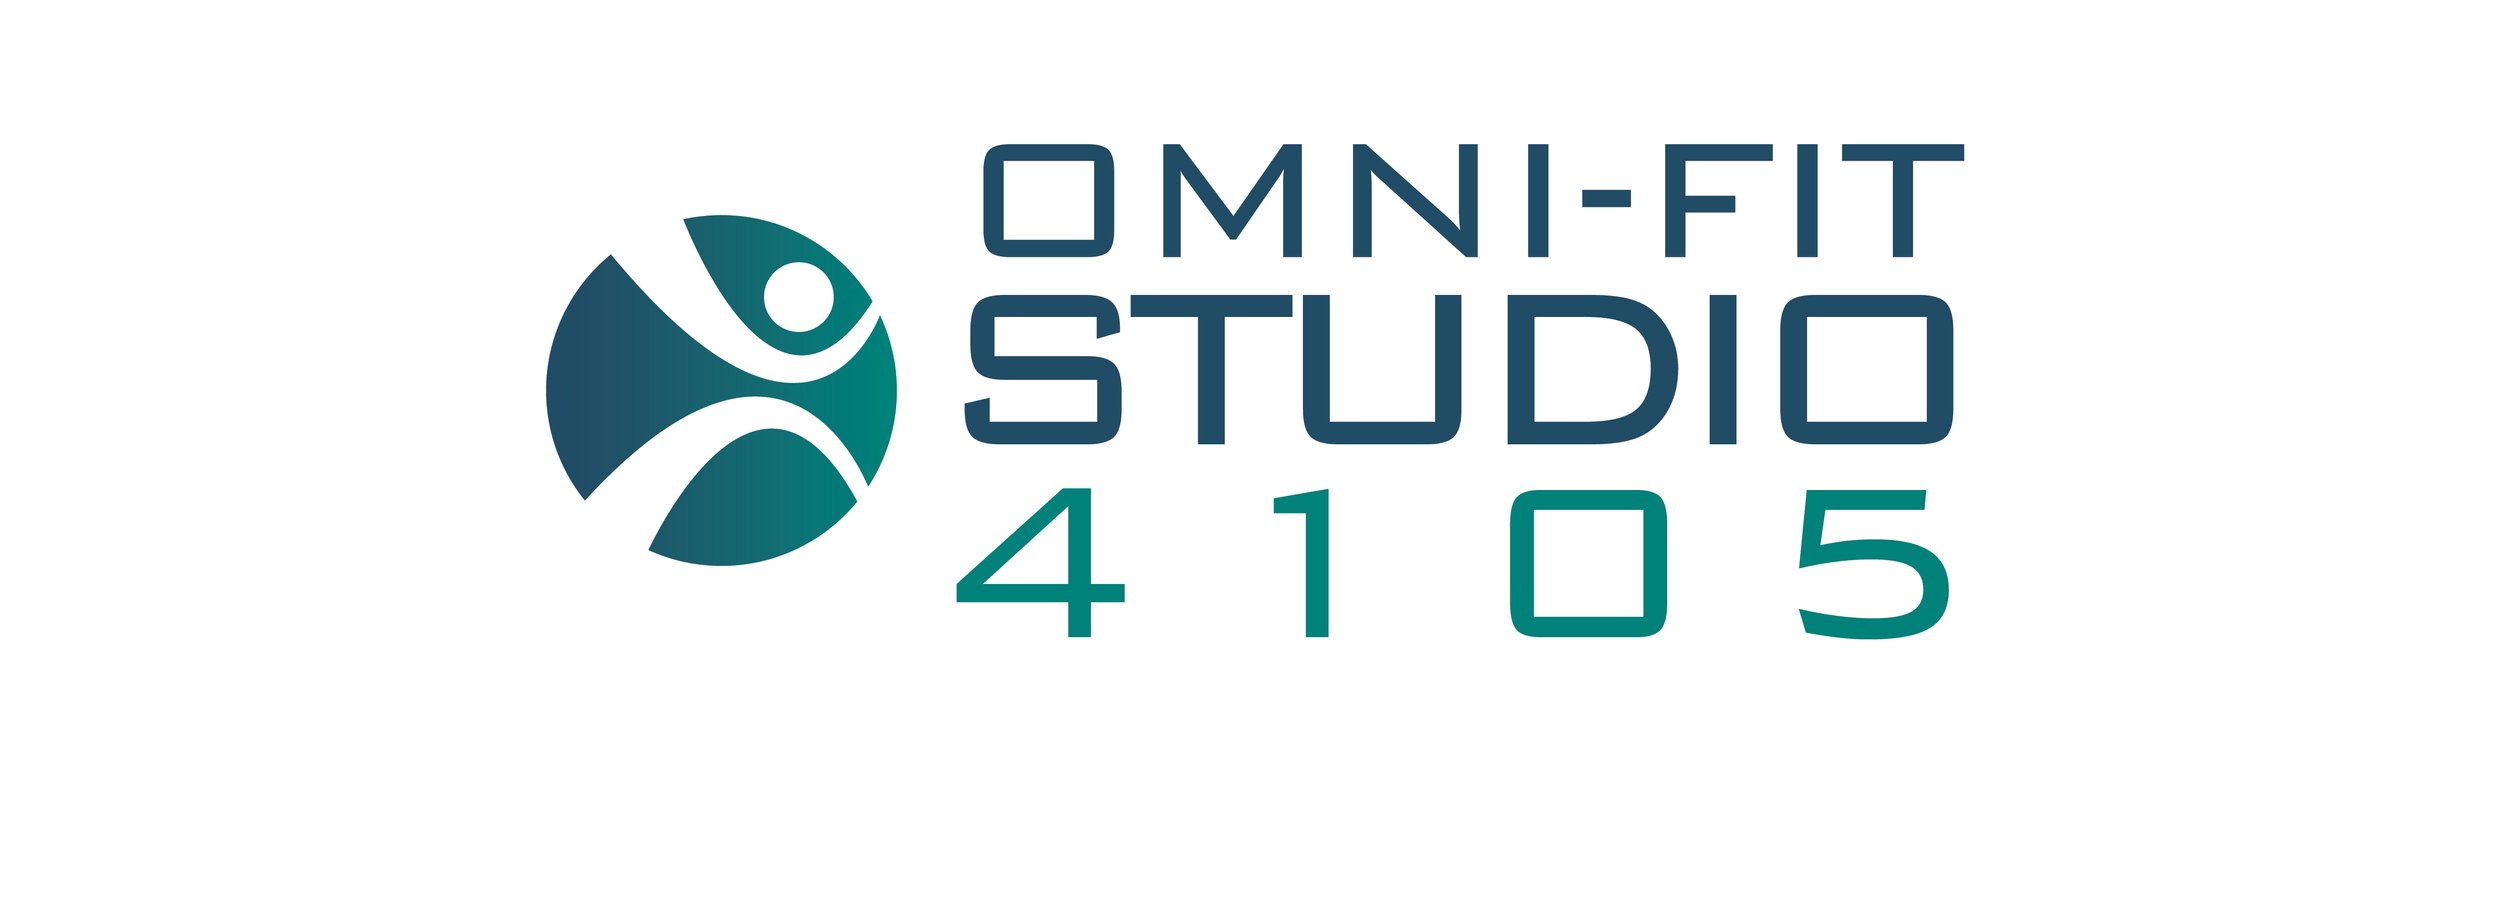 Omni-fit Studio 4105